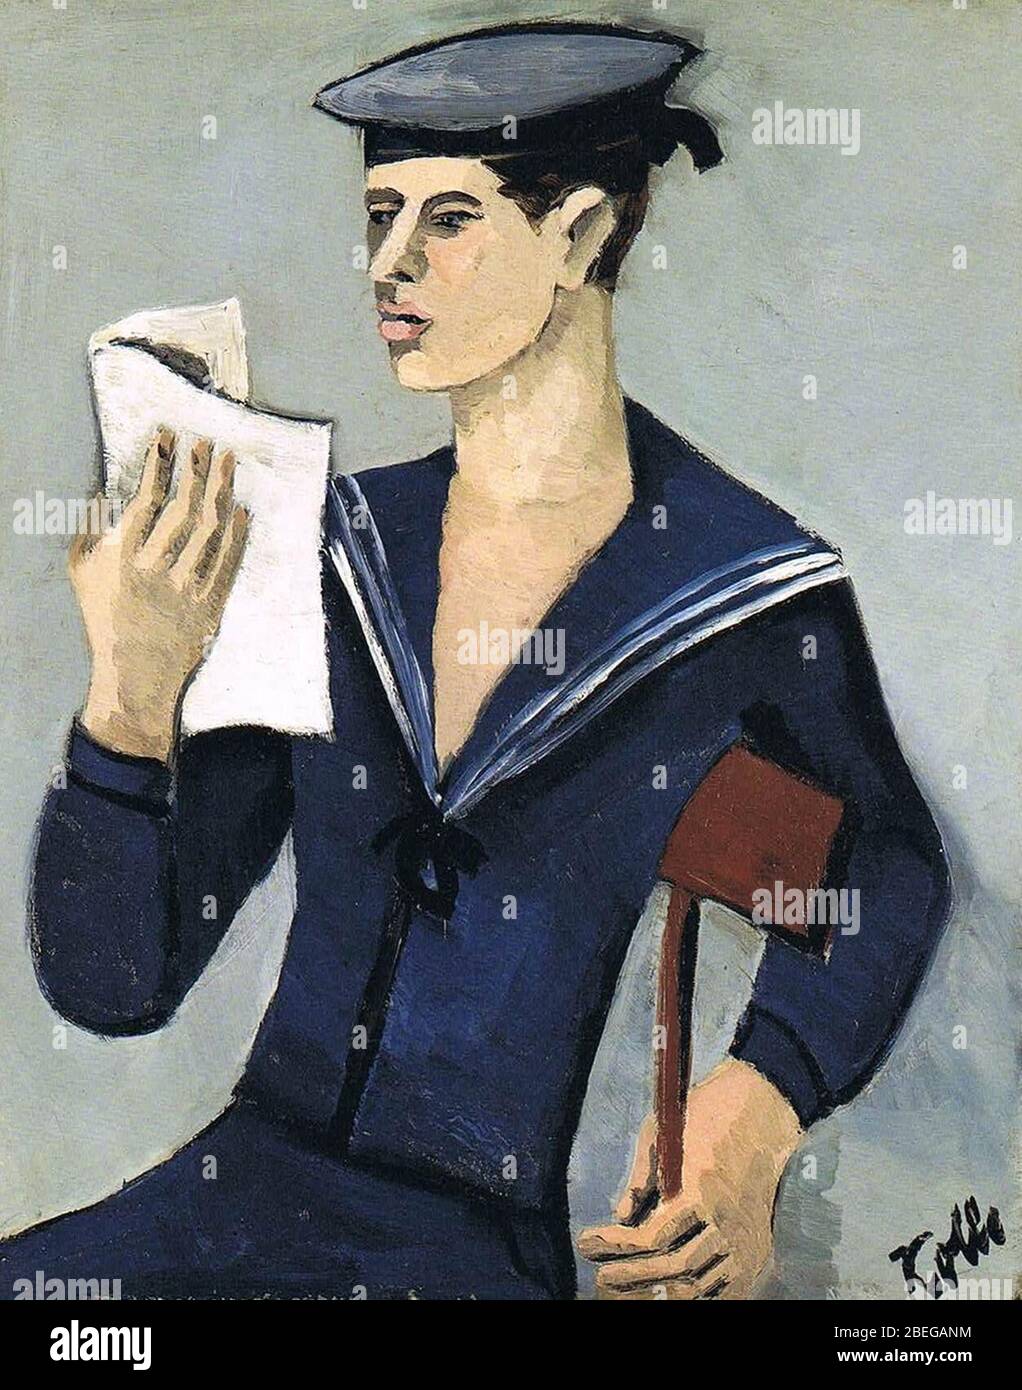 Helmut Kolle - Reading Sailor. Stock Photo